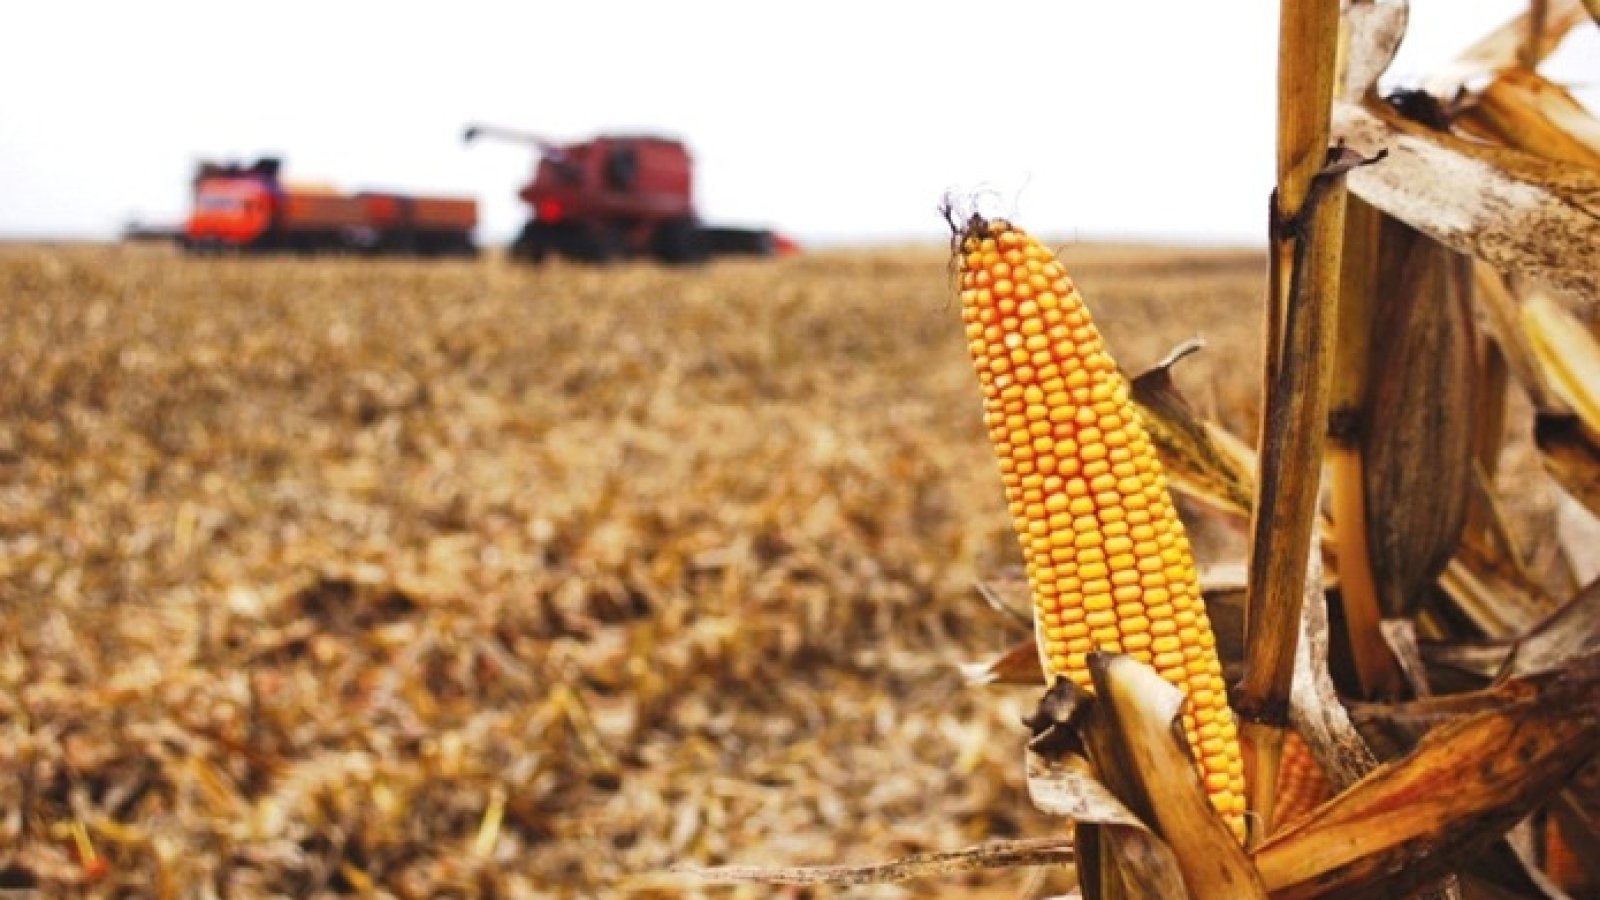 Єдиний шанс для некондиційної кукурудзи — переробка на біоетанол — думка